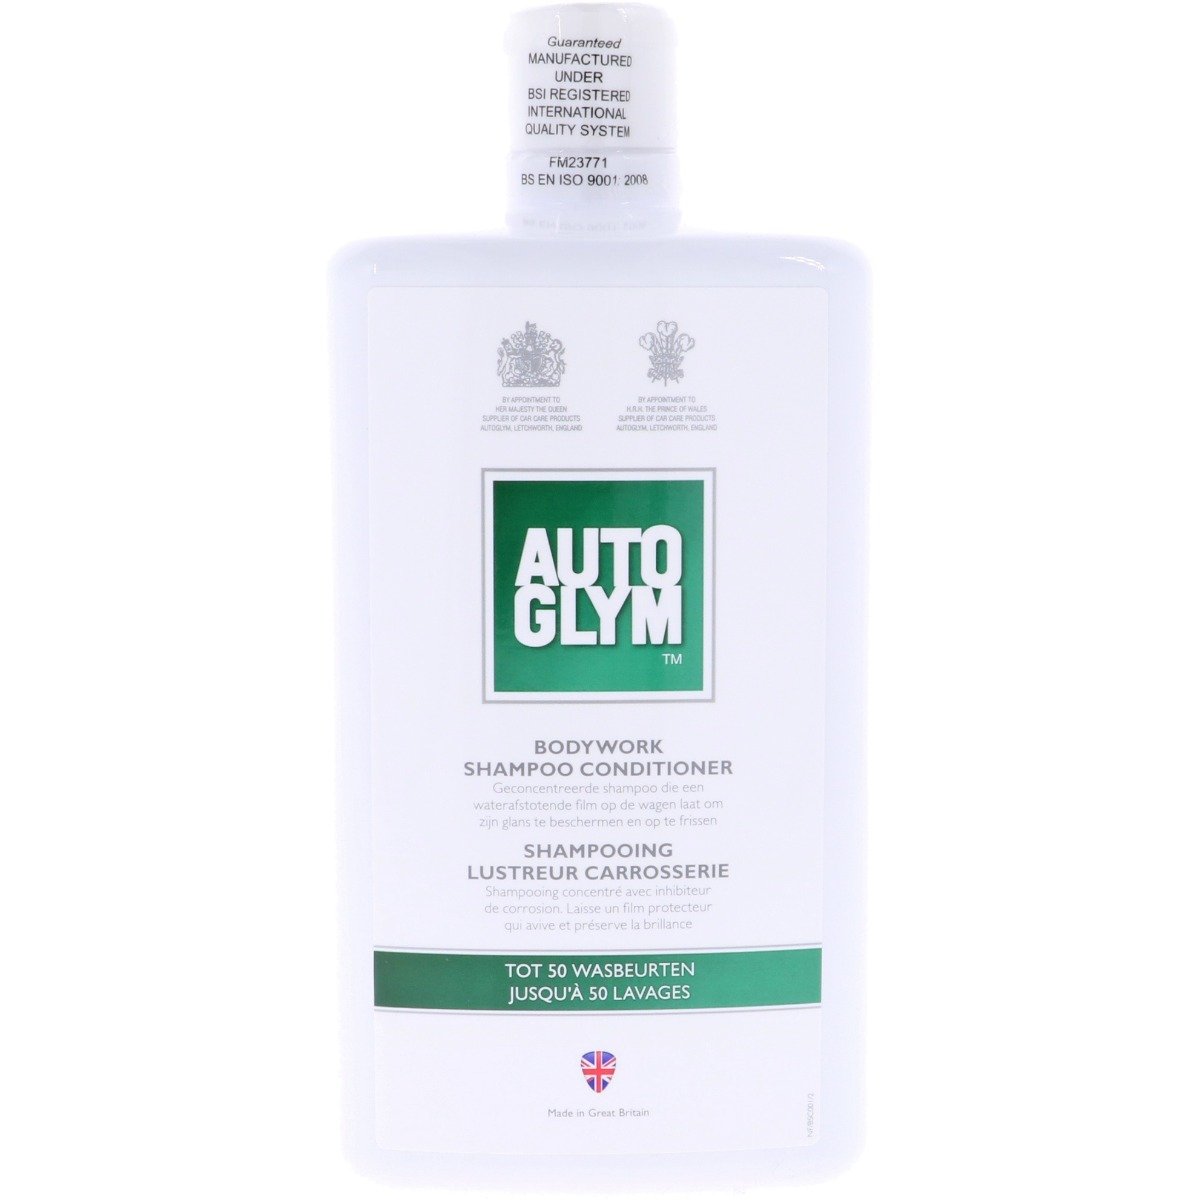 Bodywork Shampoo Conditioner - 1 Liter